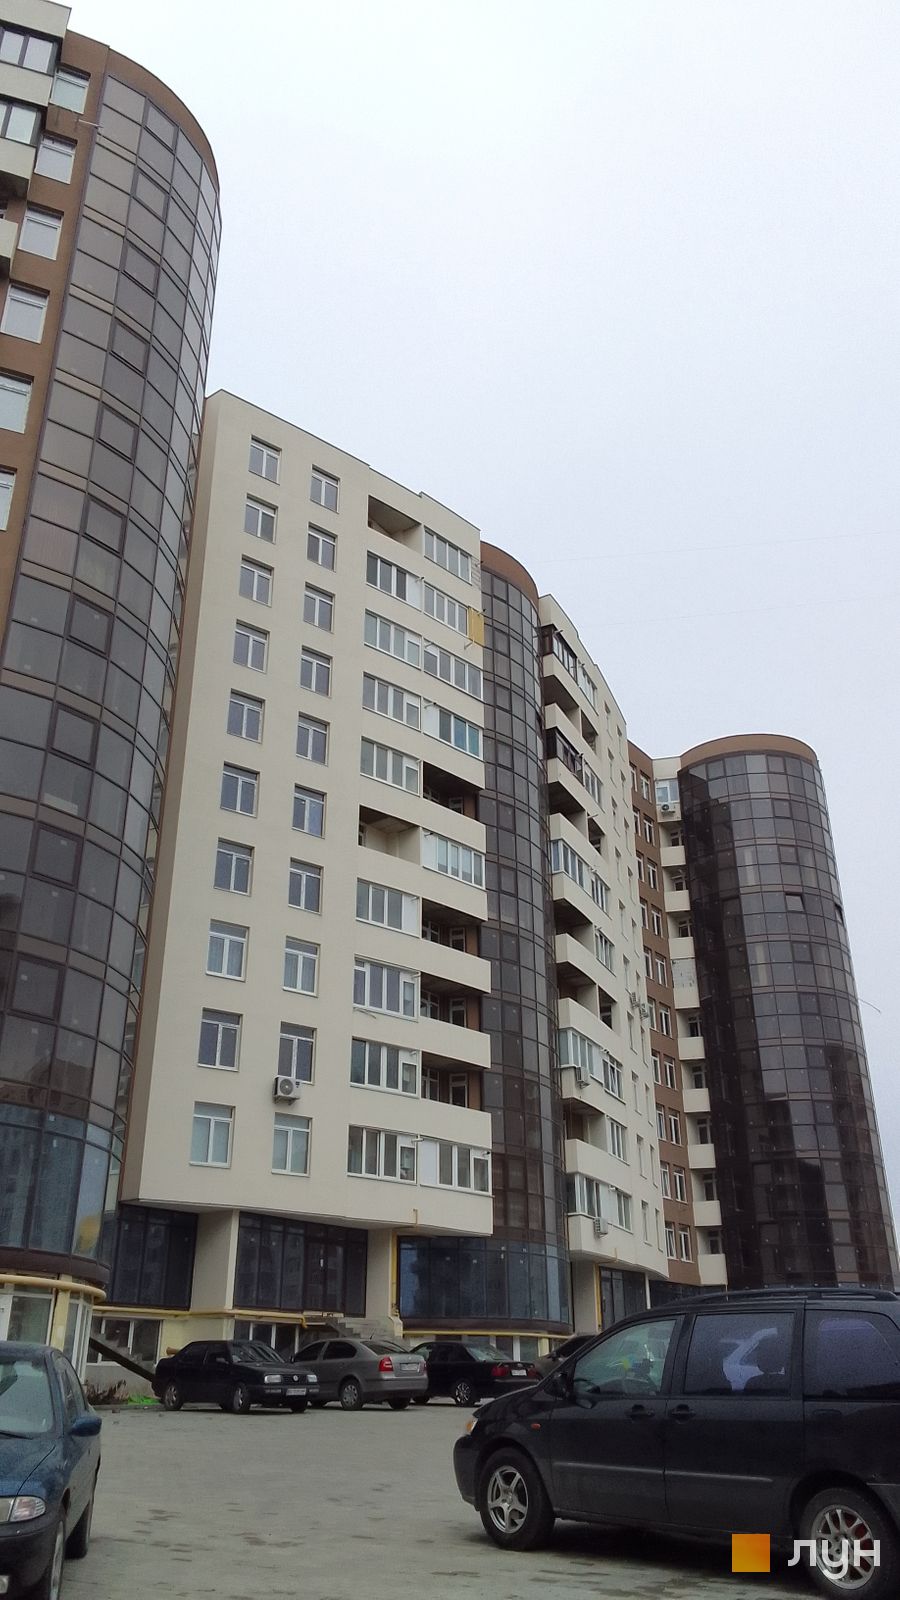 Моніторинг будівництва ЖК Київський - Ракурс 5, листопад 2022